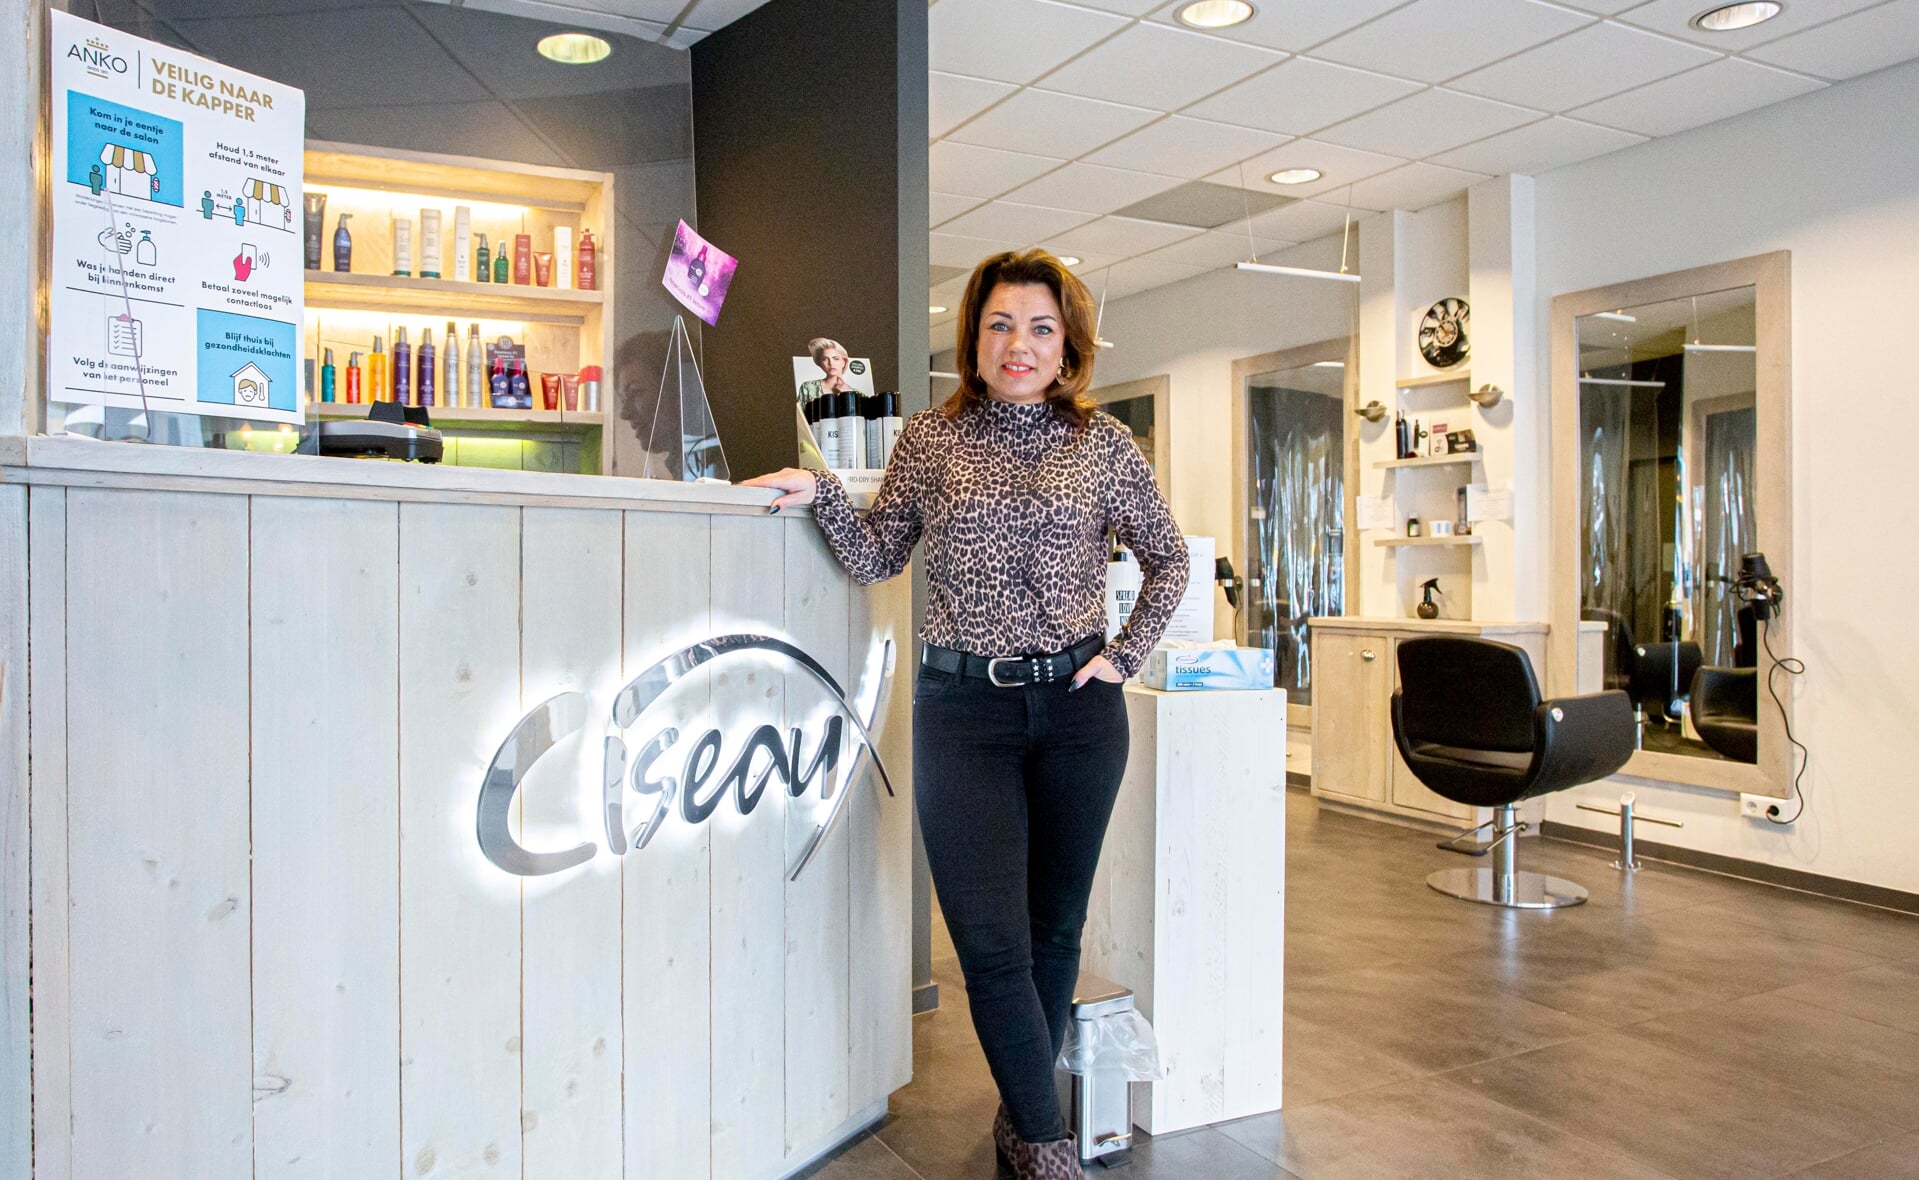 Wendy Schellings van Haarstudio Ciseaux laat vanavond het licht aan in haar zaak om aandacht te vragen voor het voortbestaan van haar bedrijf. (Foto: Bas van den Biggelaar).